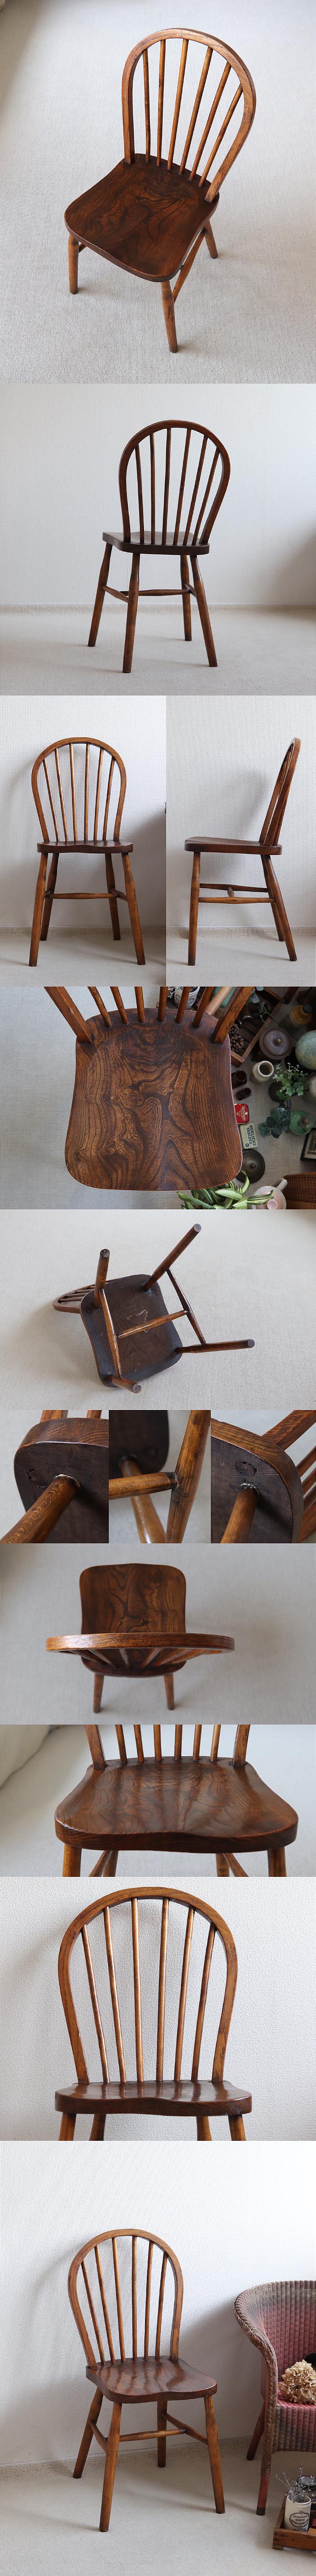 イギリス アンティーク フープバックチェア ウィンザー 木製椅子 古木 家具「キッチンチェア」T-912